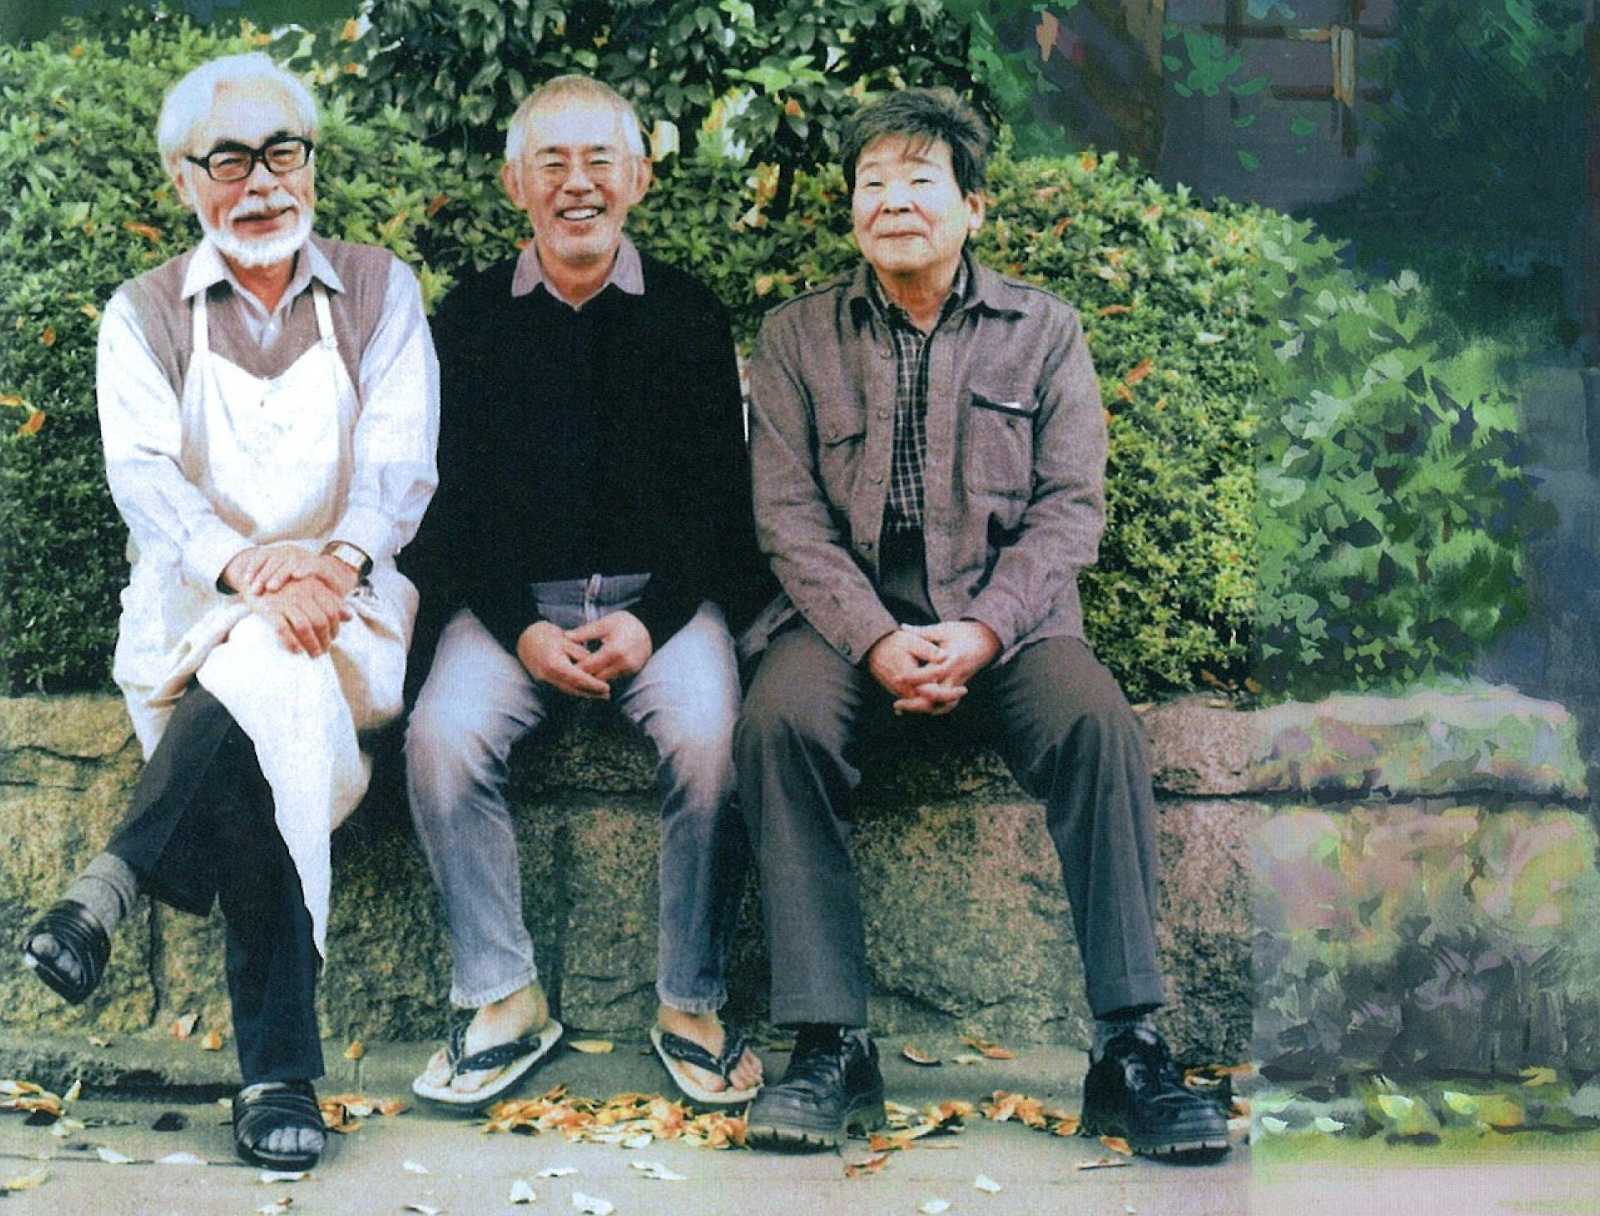 Основатели студии Ghibli. Слева направо: Миядзаки, Судзуки, Такахата. Источник: ciakclub.it